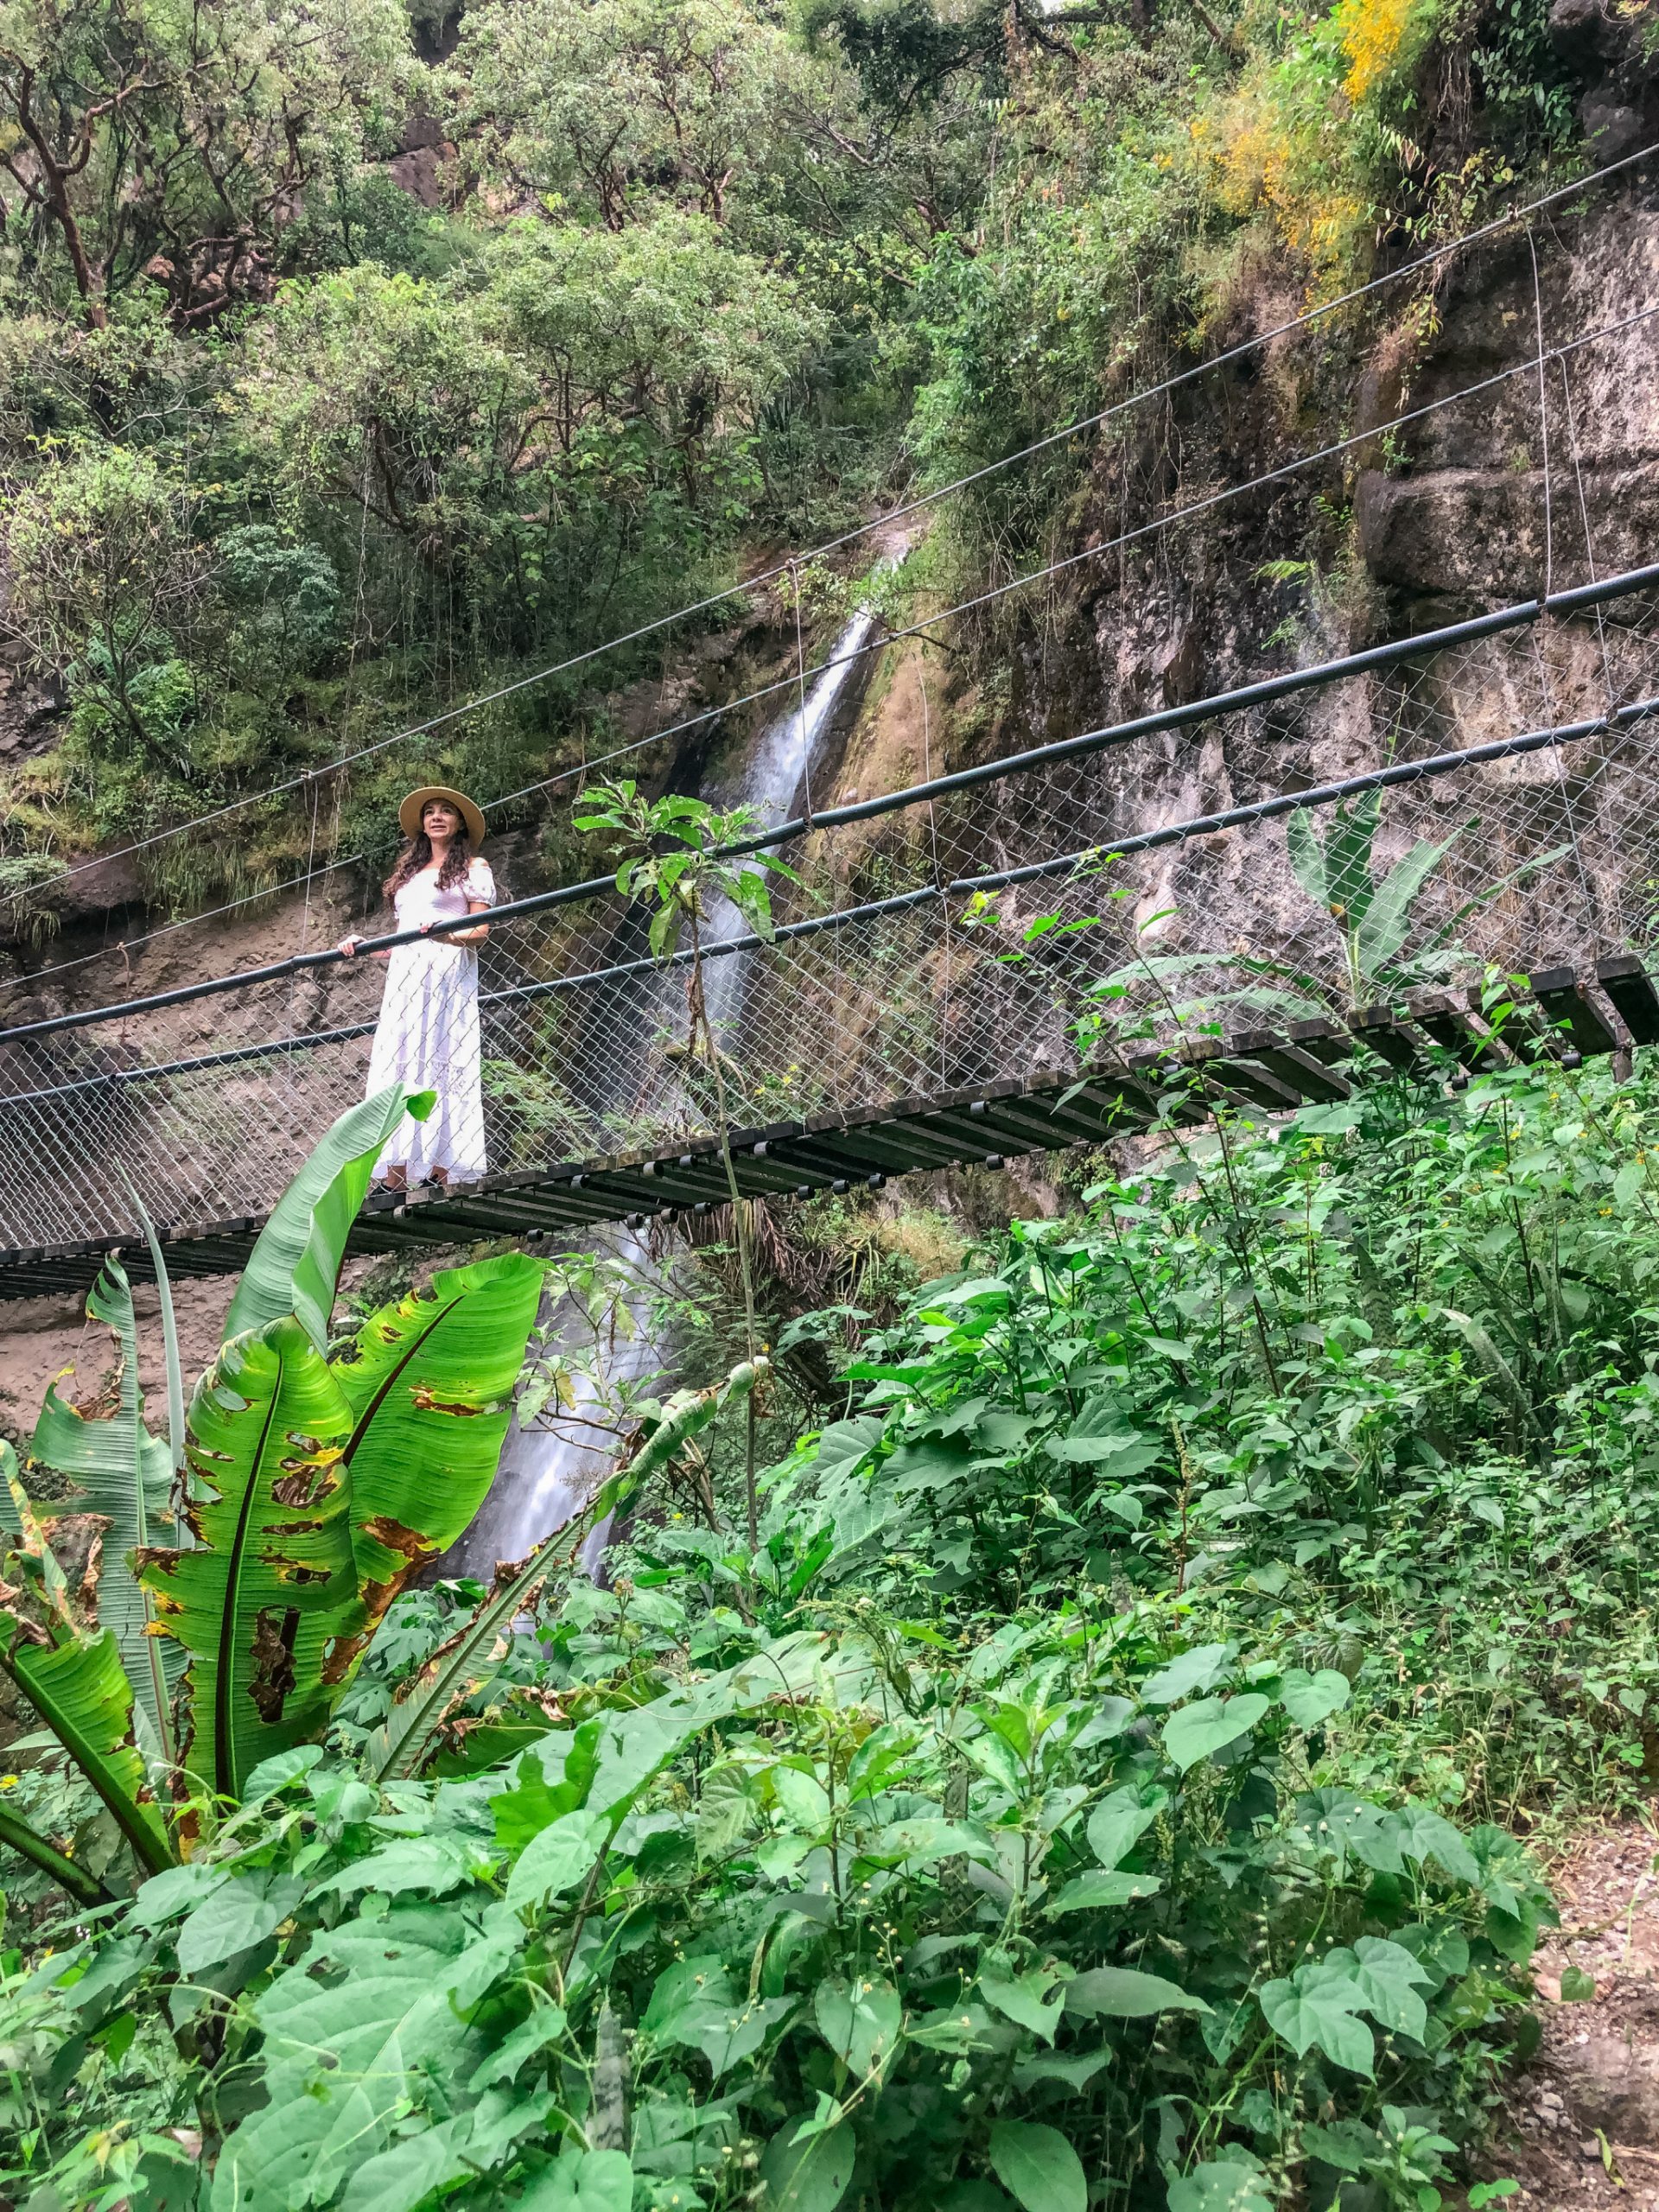 Reserva Natural de Atitlan hanging bridges and waterfall